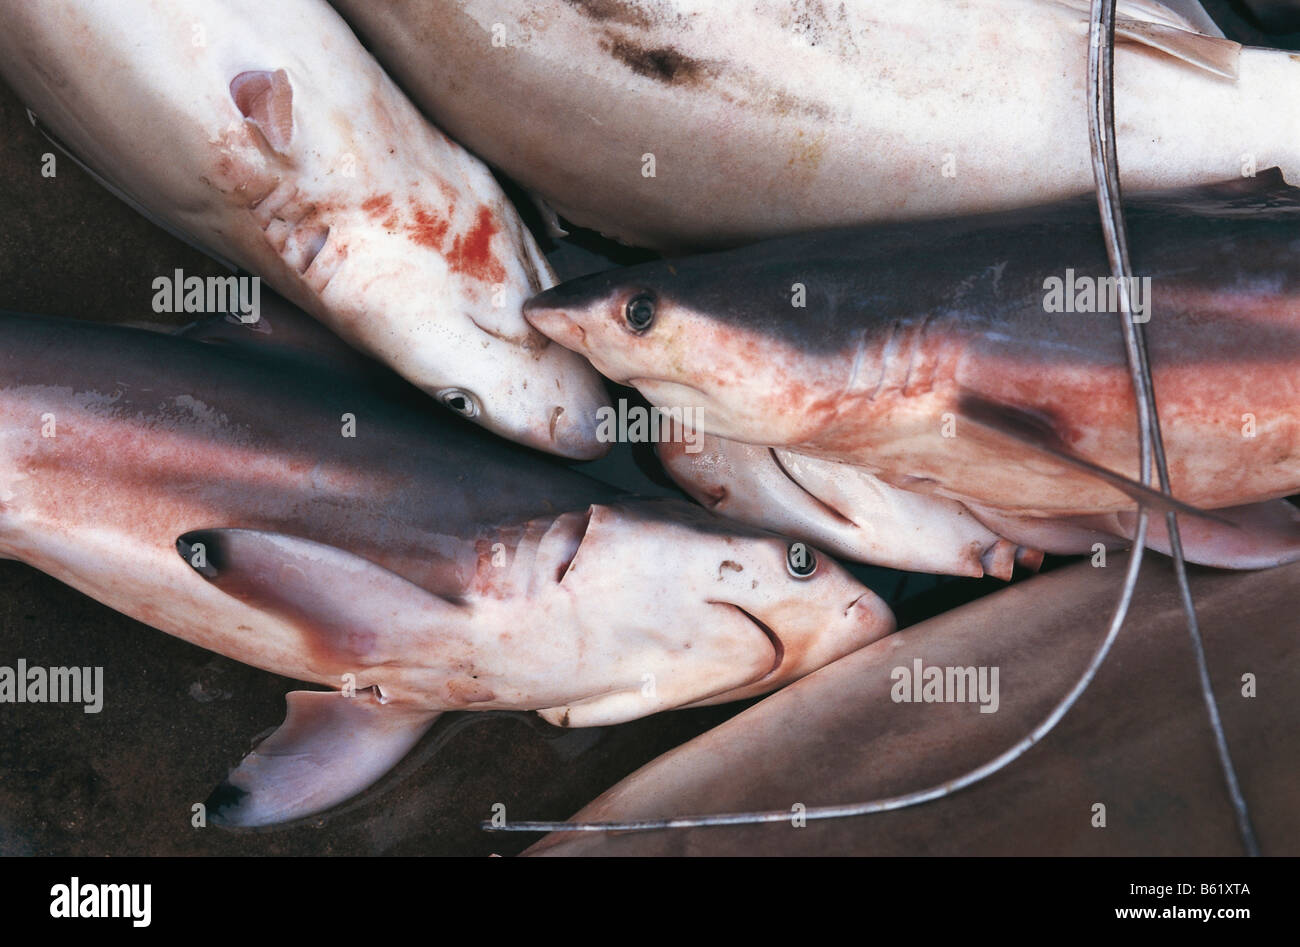 Tiburones muertos en mercado de pescado Foto de stock